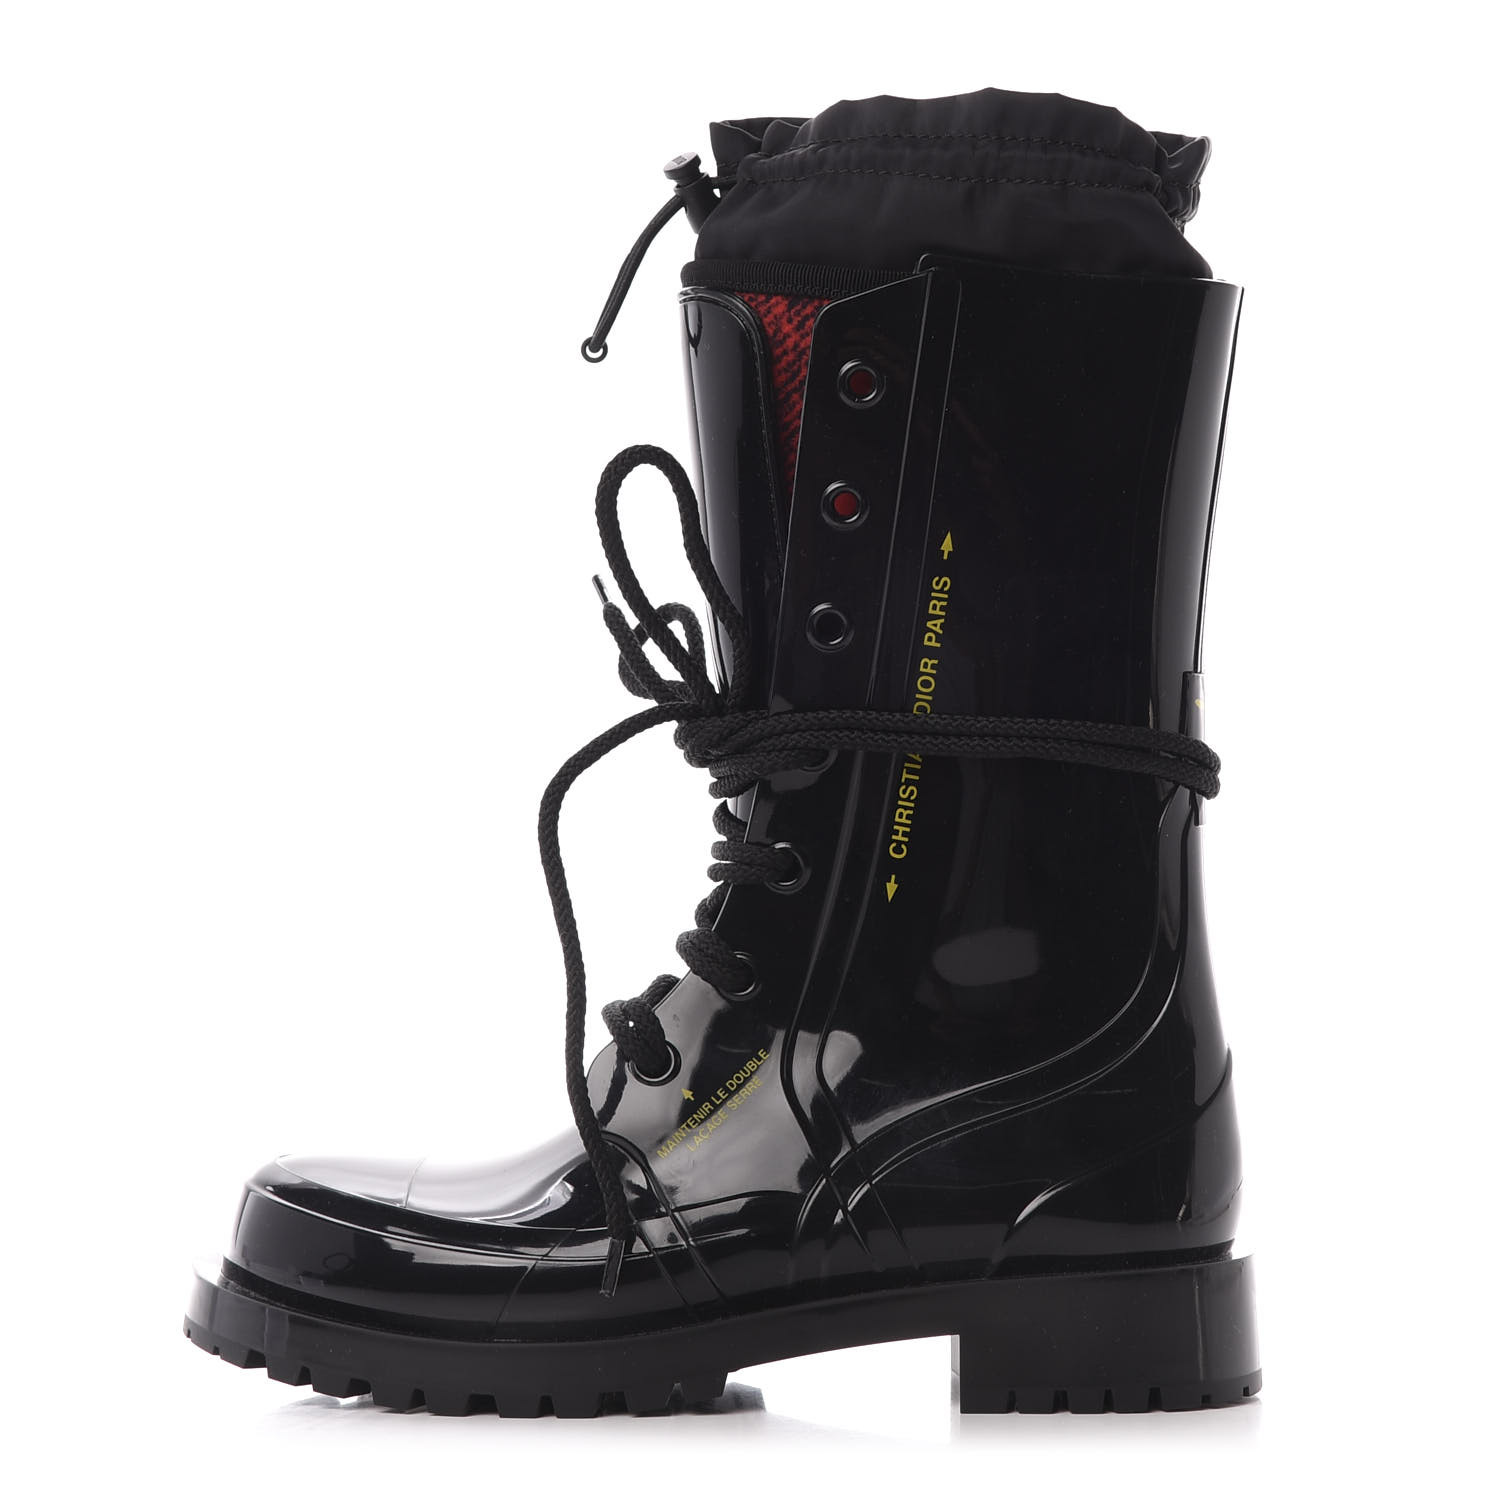 dior rain boots